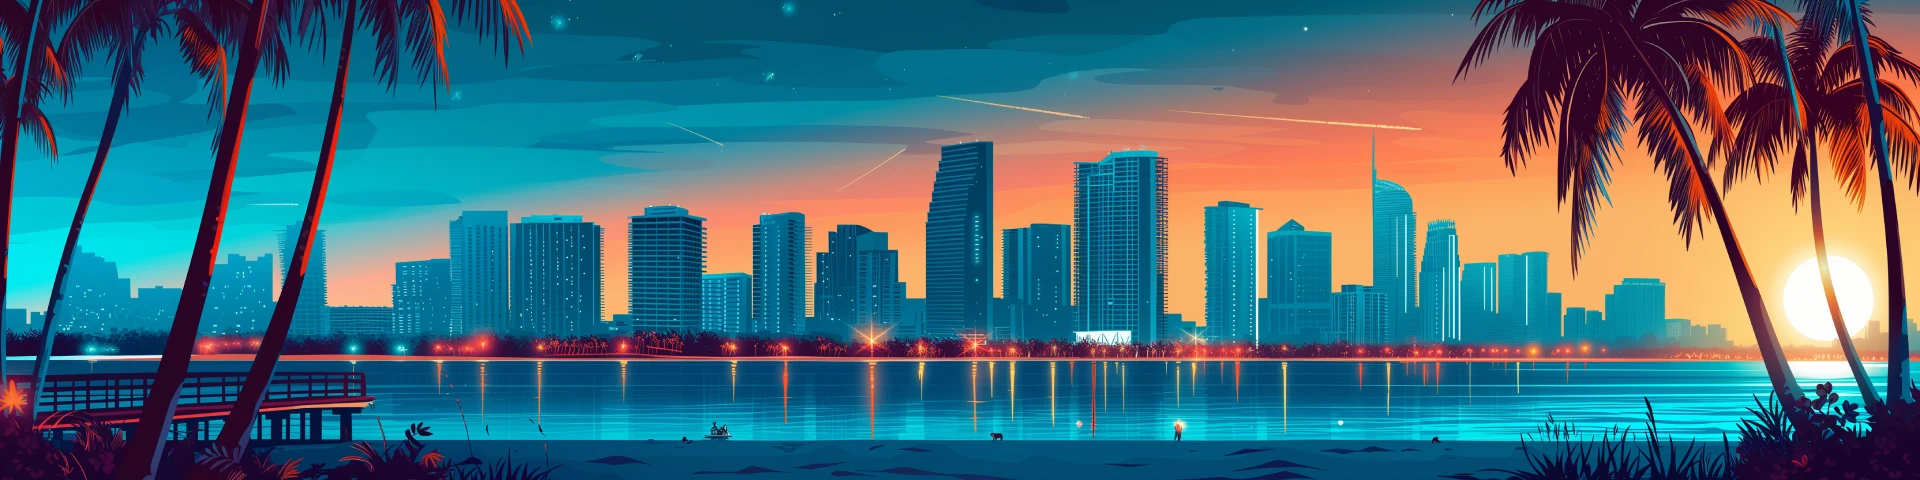 Skyline of Miami cartoon drawn